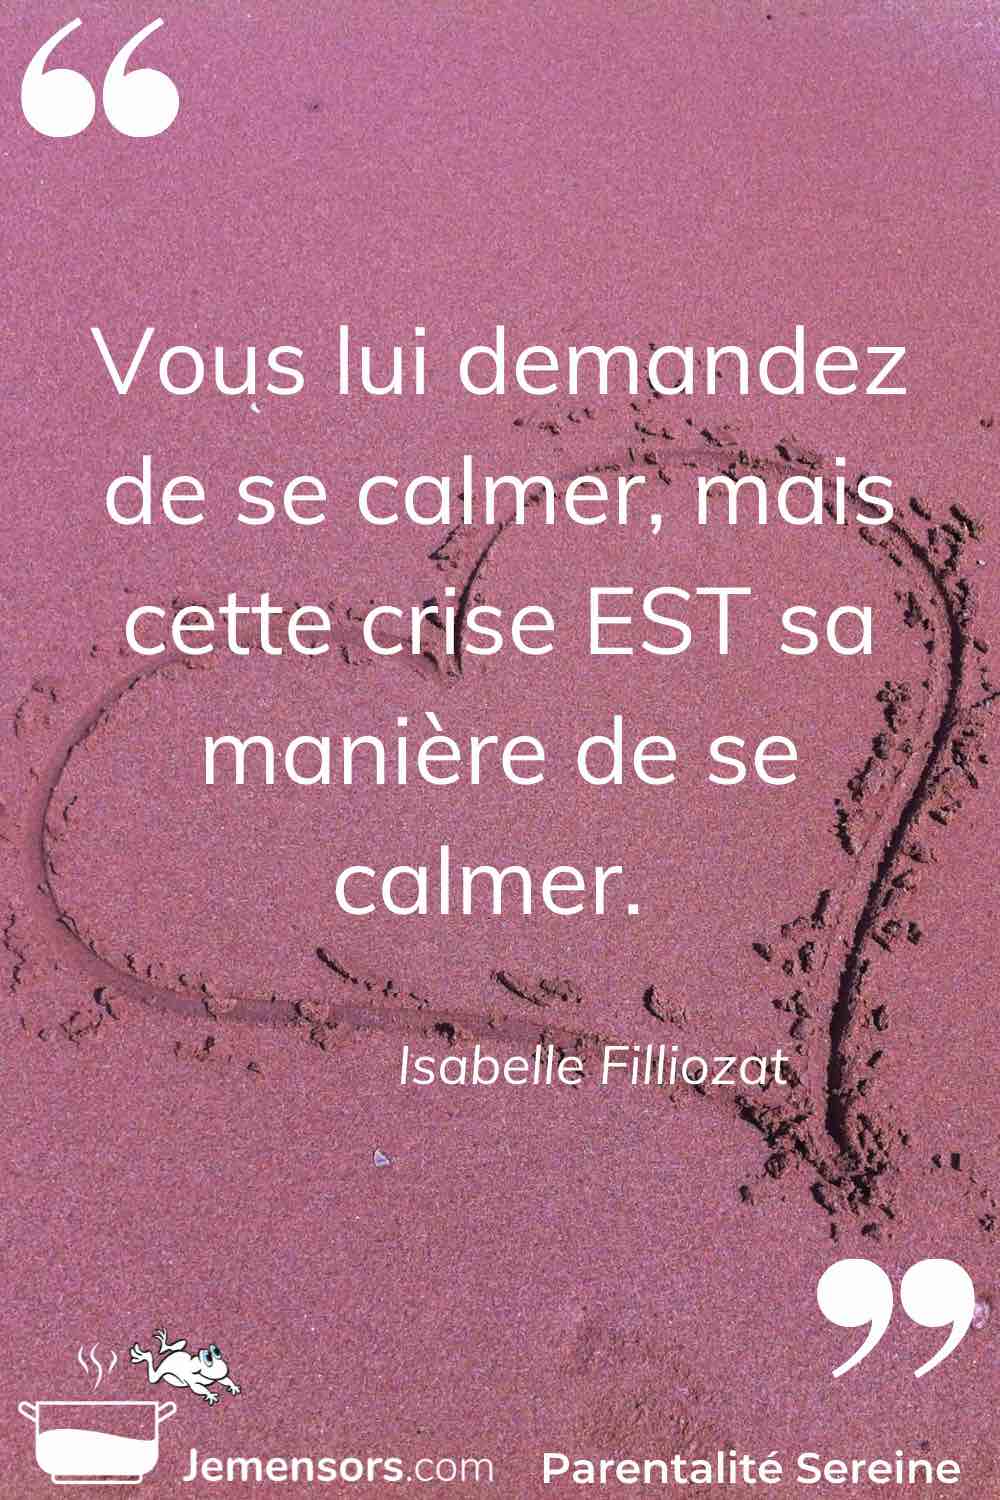 "Vous lui demandez de se calmer, mais cette crise EST sa manière de se calmer." Isabelle Filliozat 